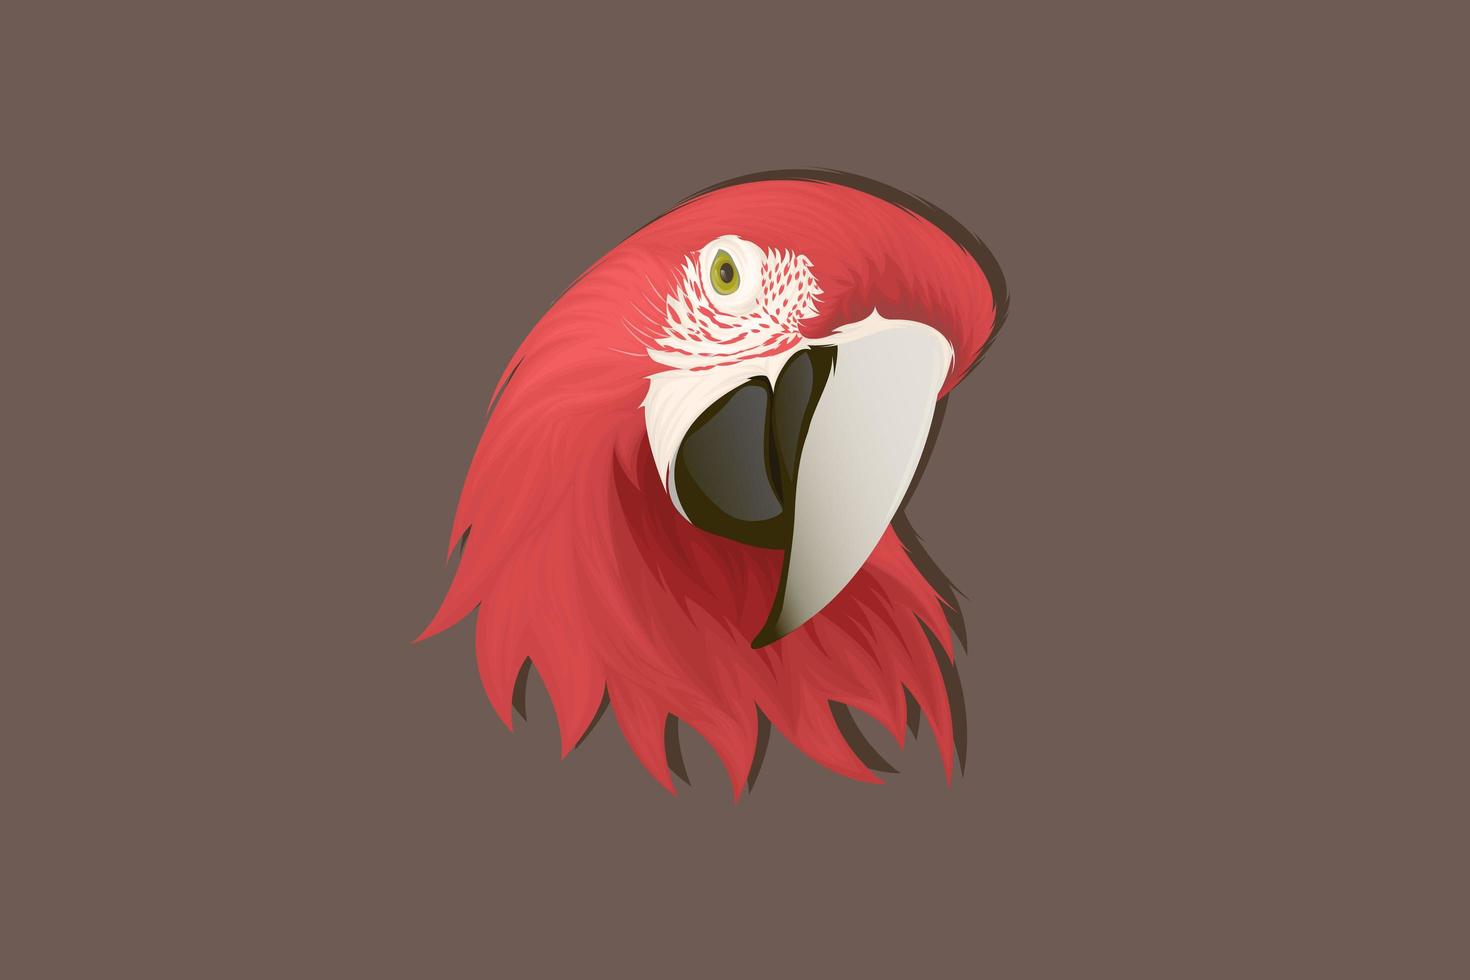 realistische Art rote Papagei Handzeichnung vektor